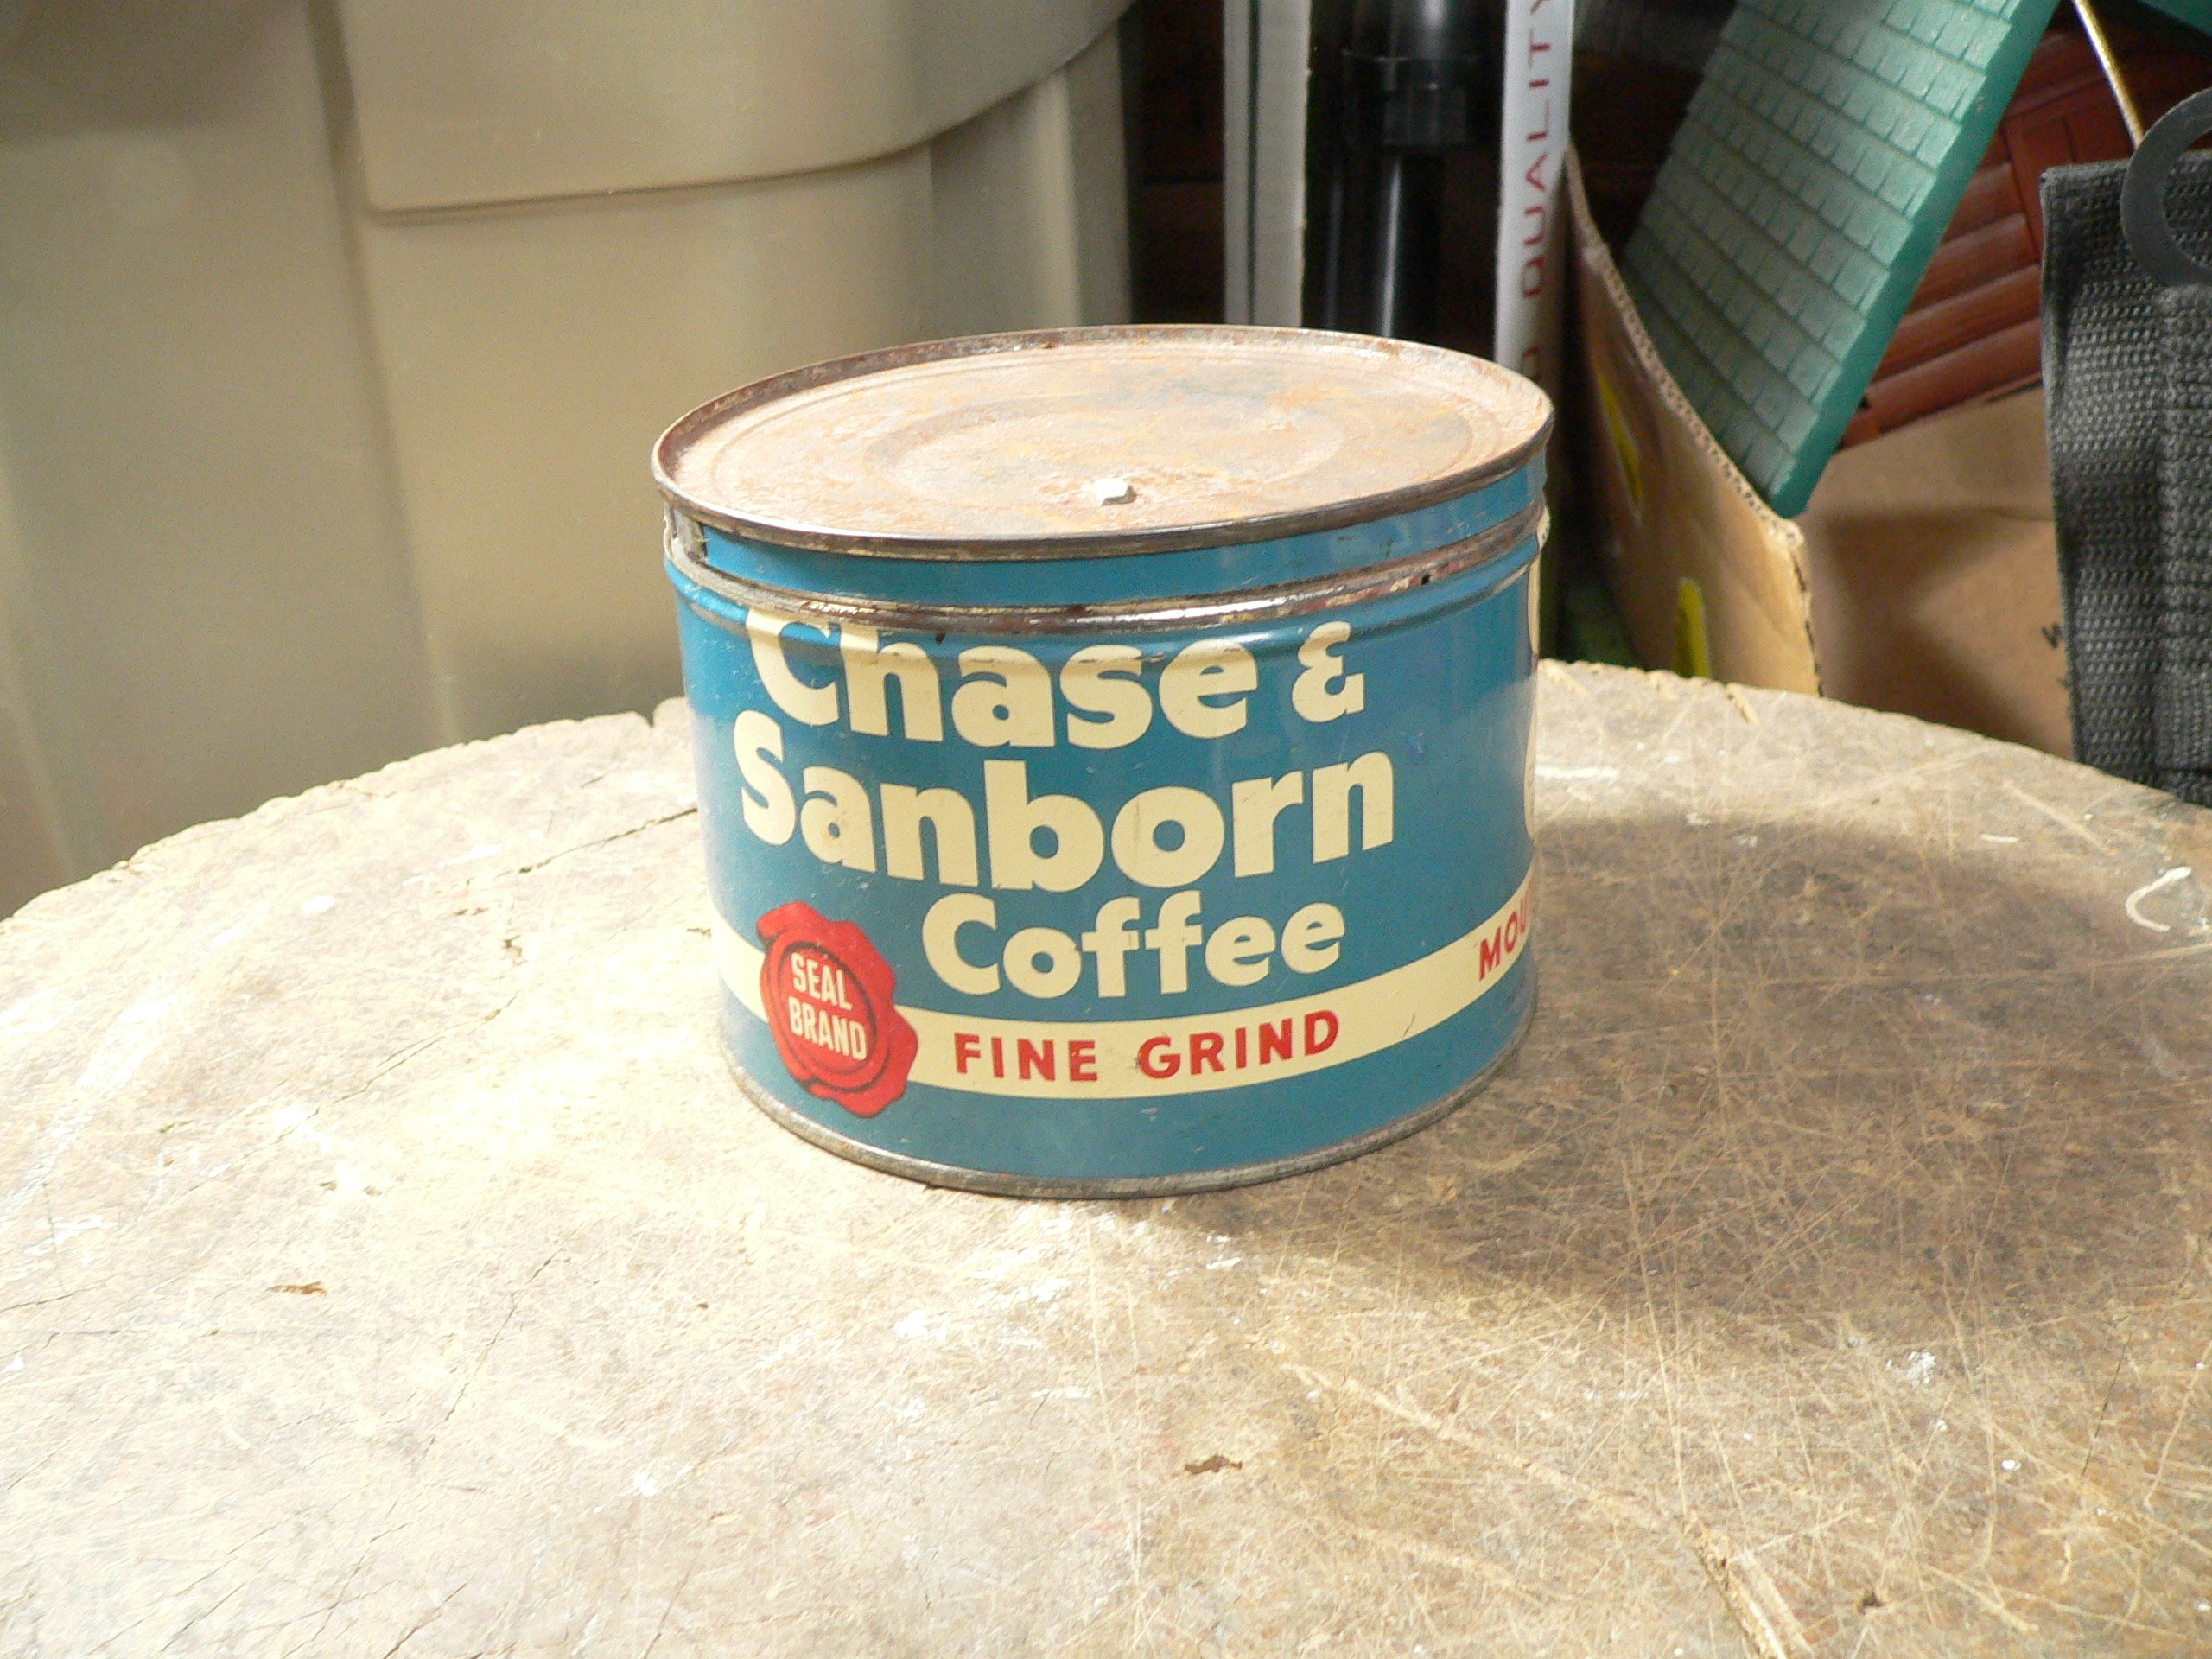 Canne antique café chase & sanborn # 9615.6